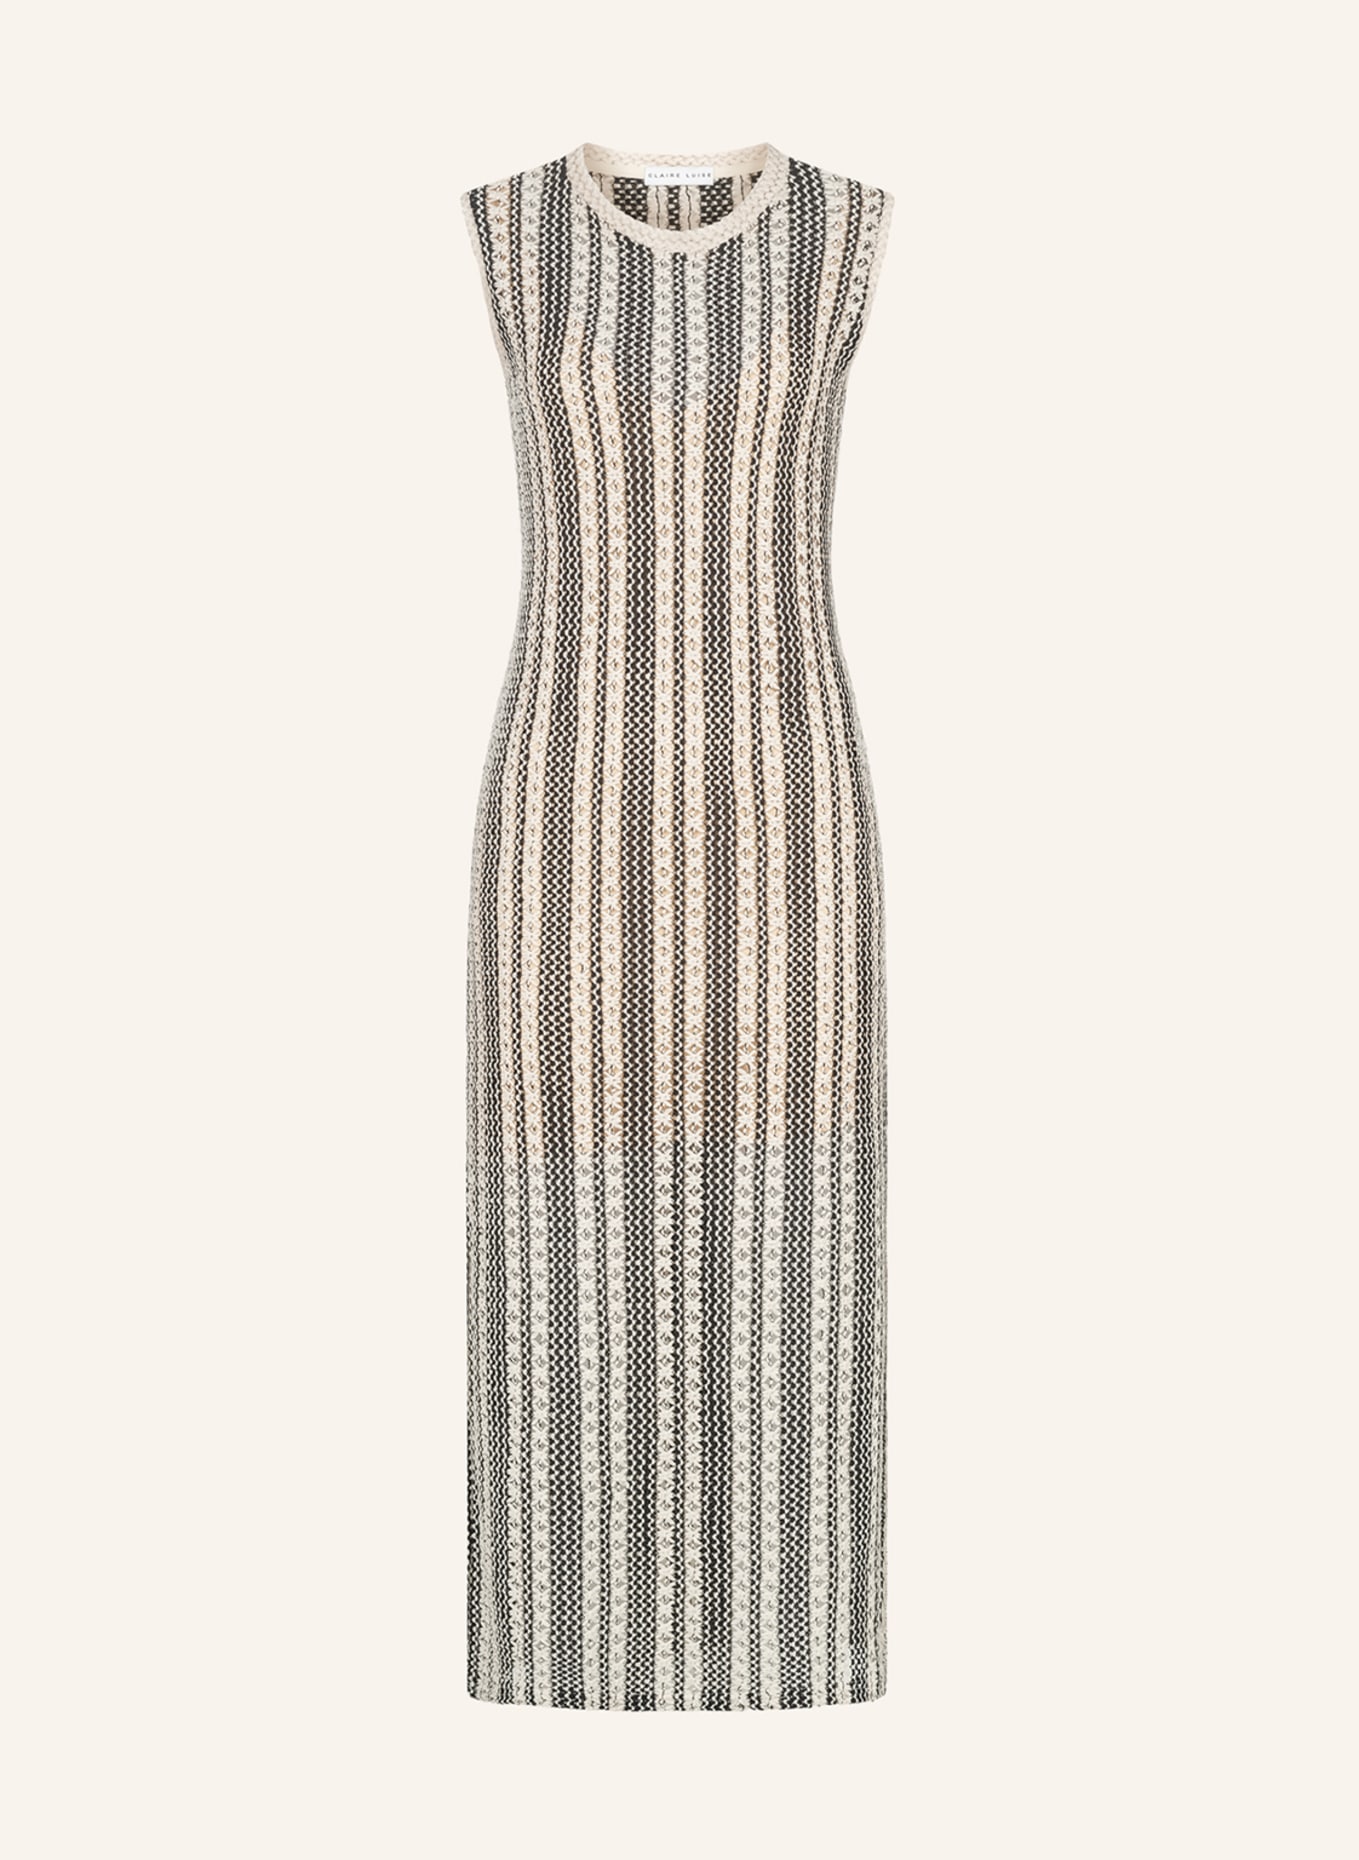 CLAIRE LUISE Kleid, Farbe: SCHWARZ (Bild 1)